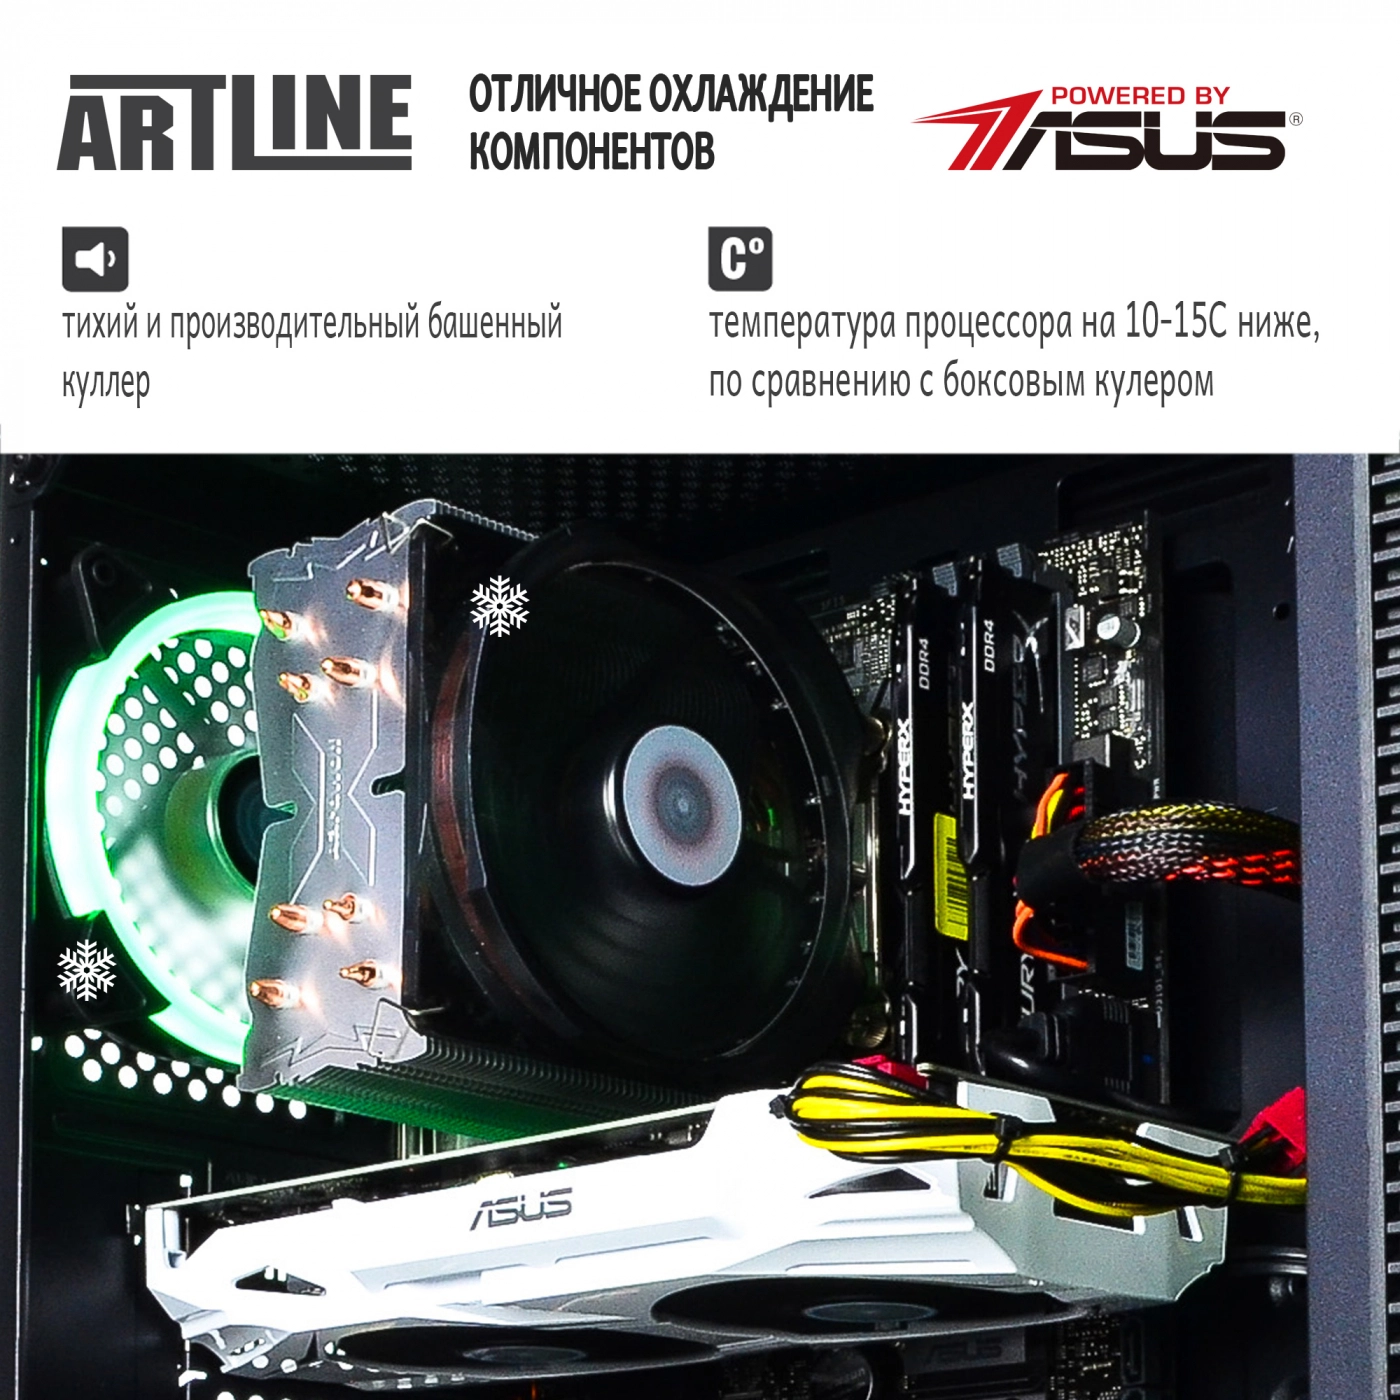 Купить Компьютер ARTLINE Gaming X77v31 - фото 3